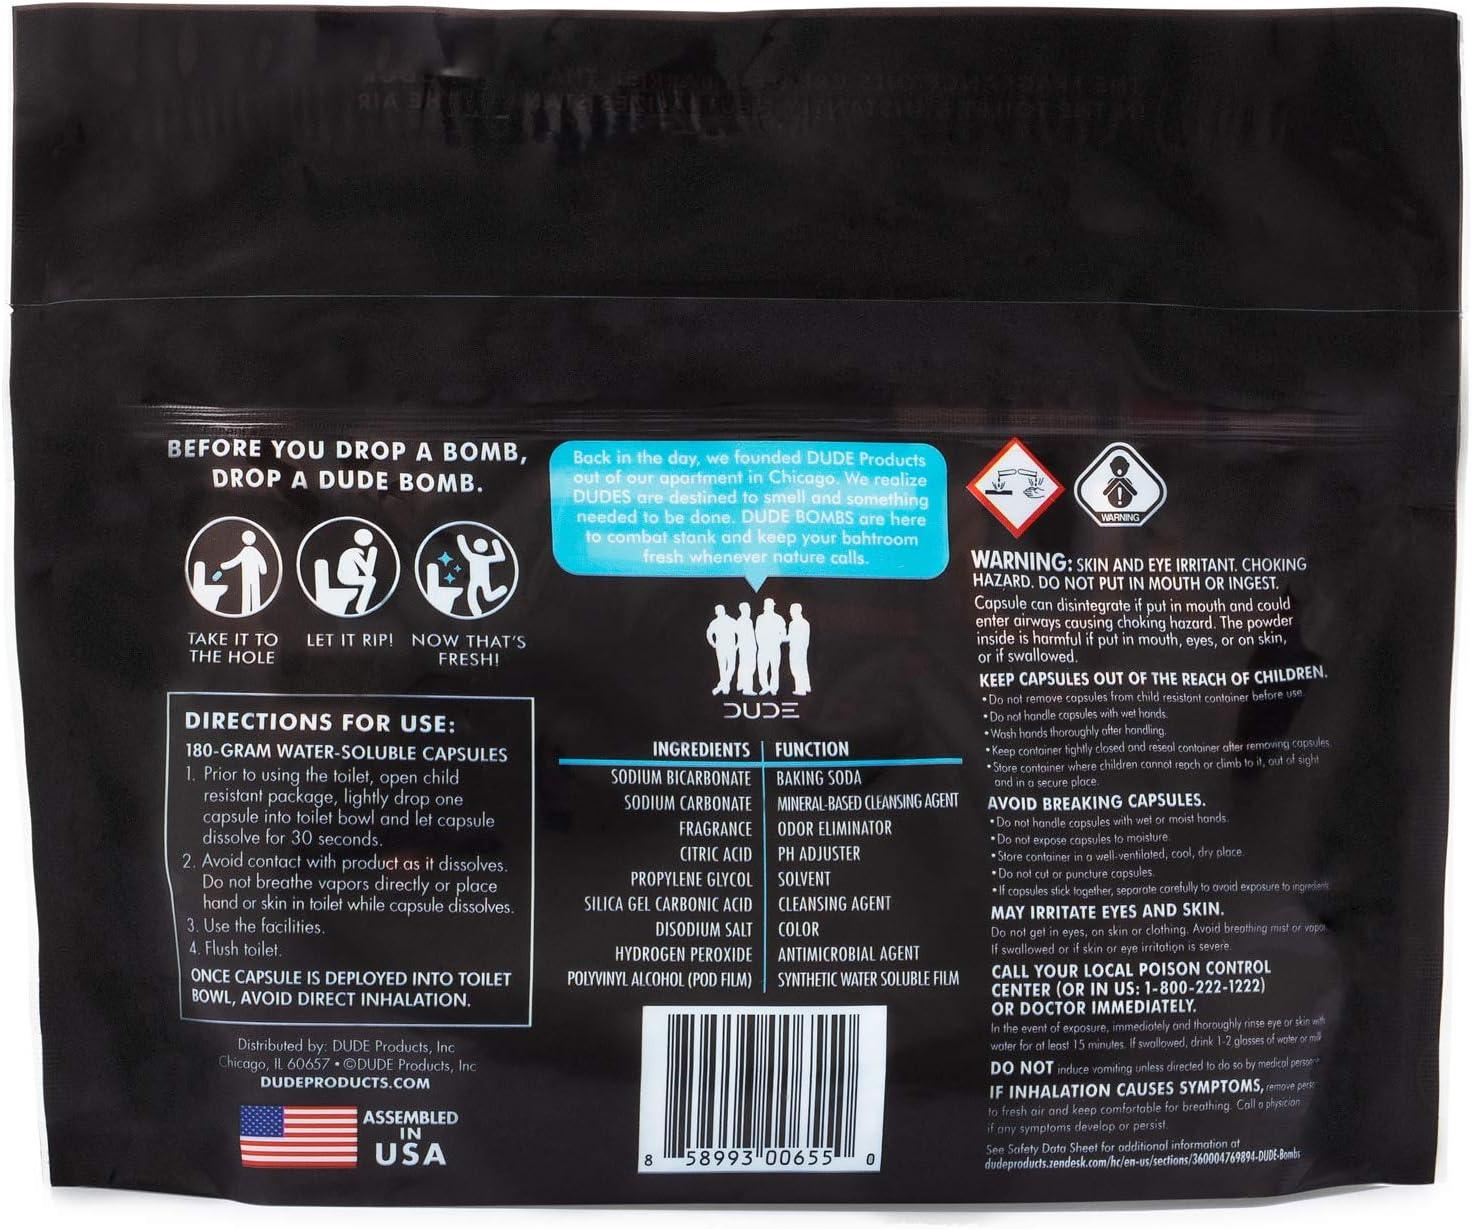 Bombs Eliminador de olores para inodoro, 1 paquete, 40 vainas, eliminador de - VIRTUAL MUEBLES